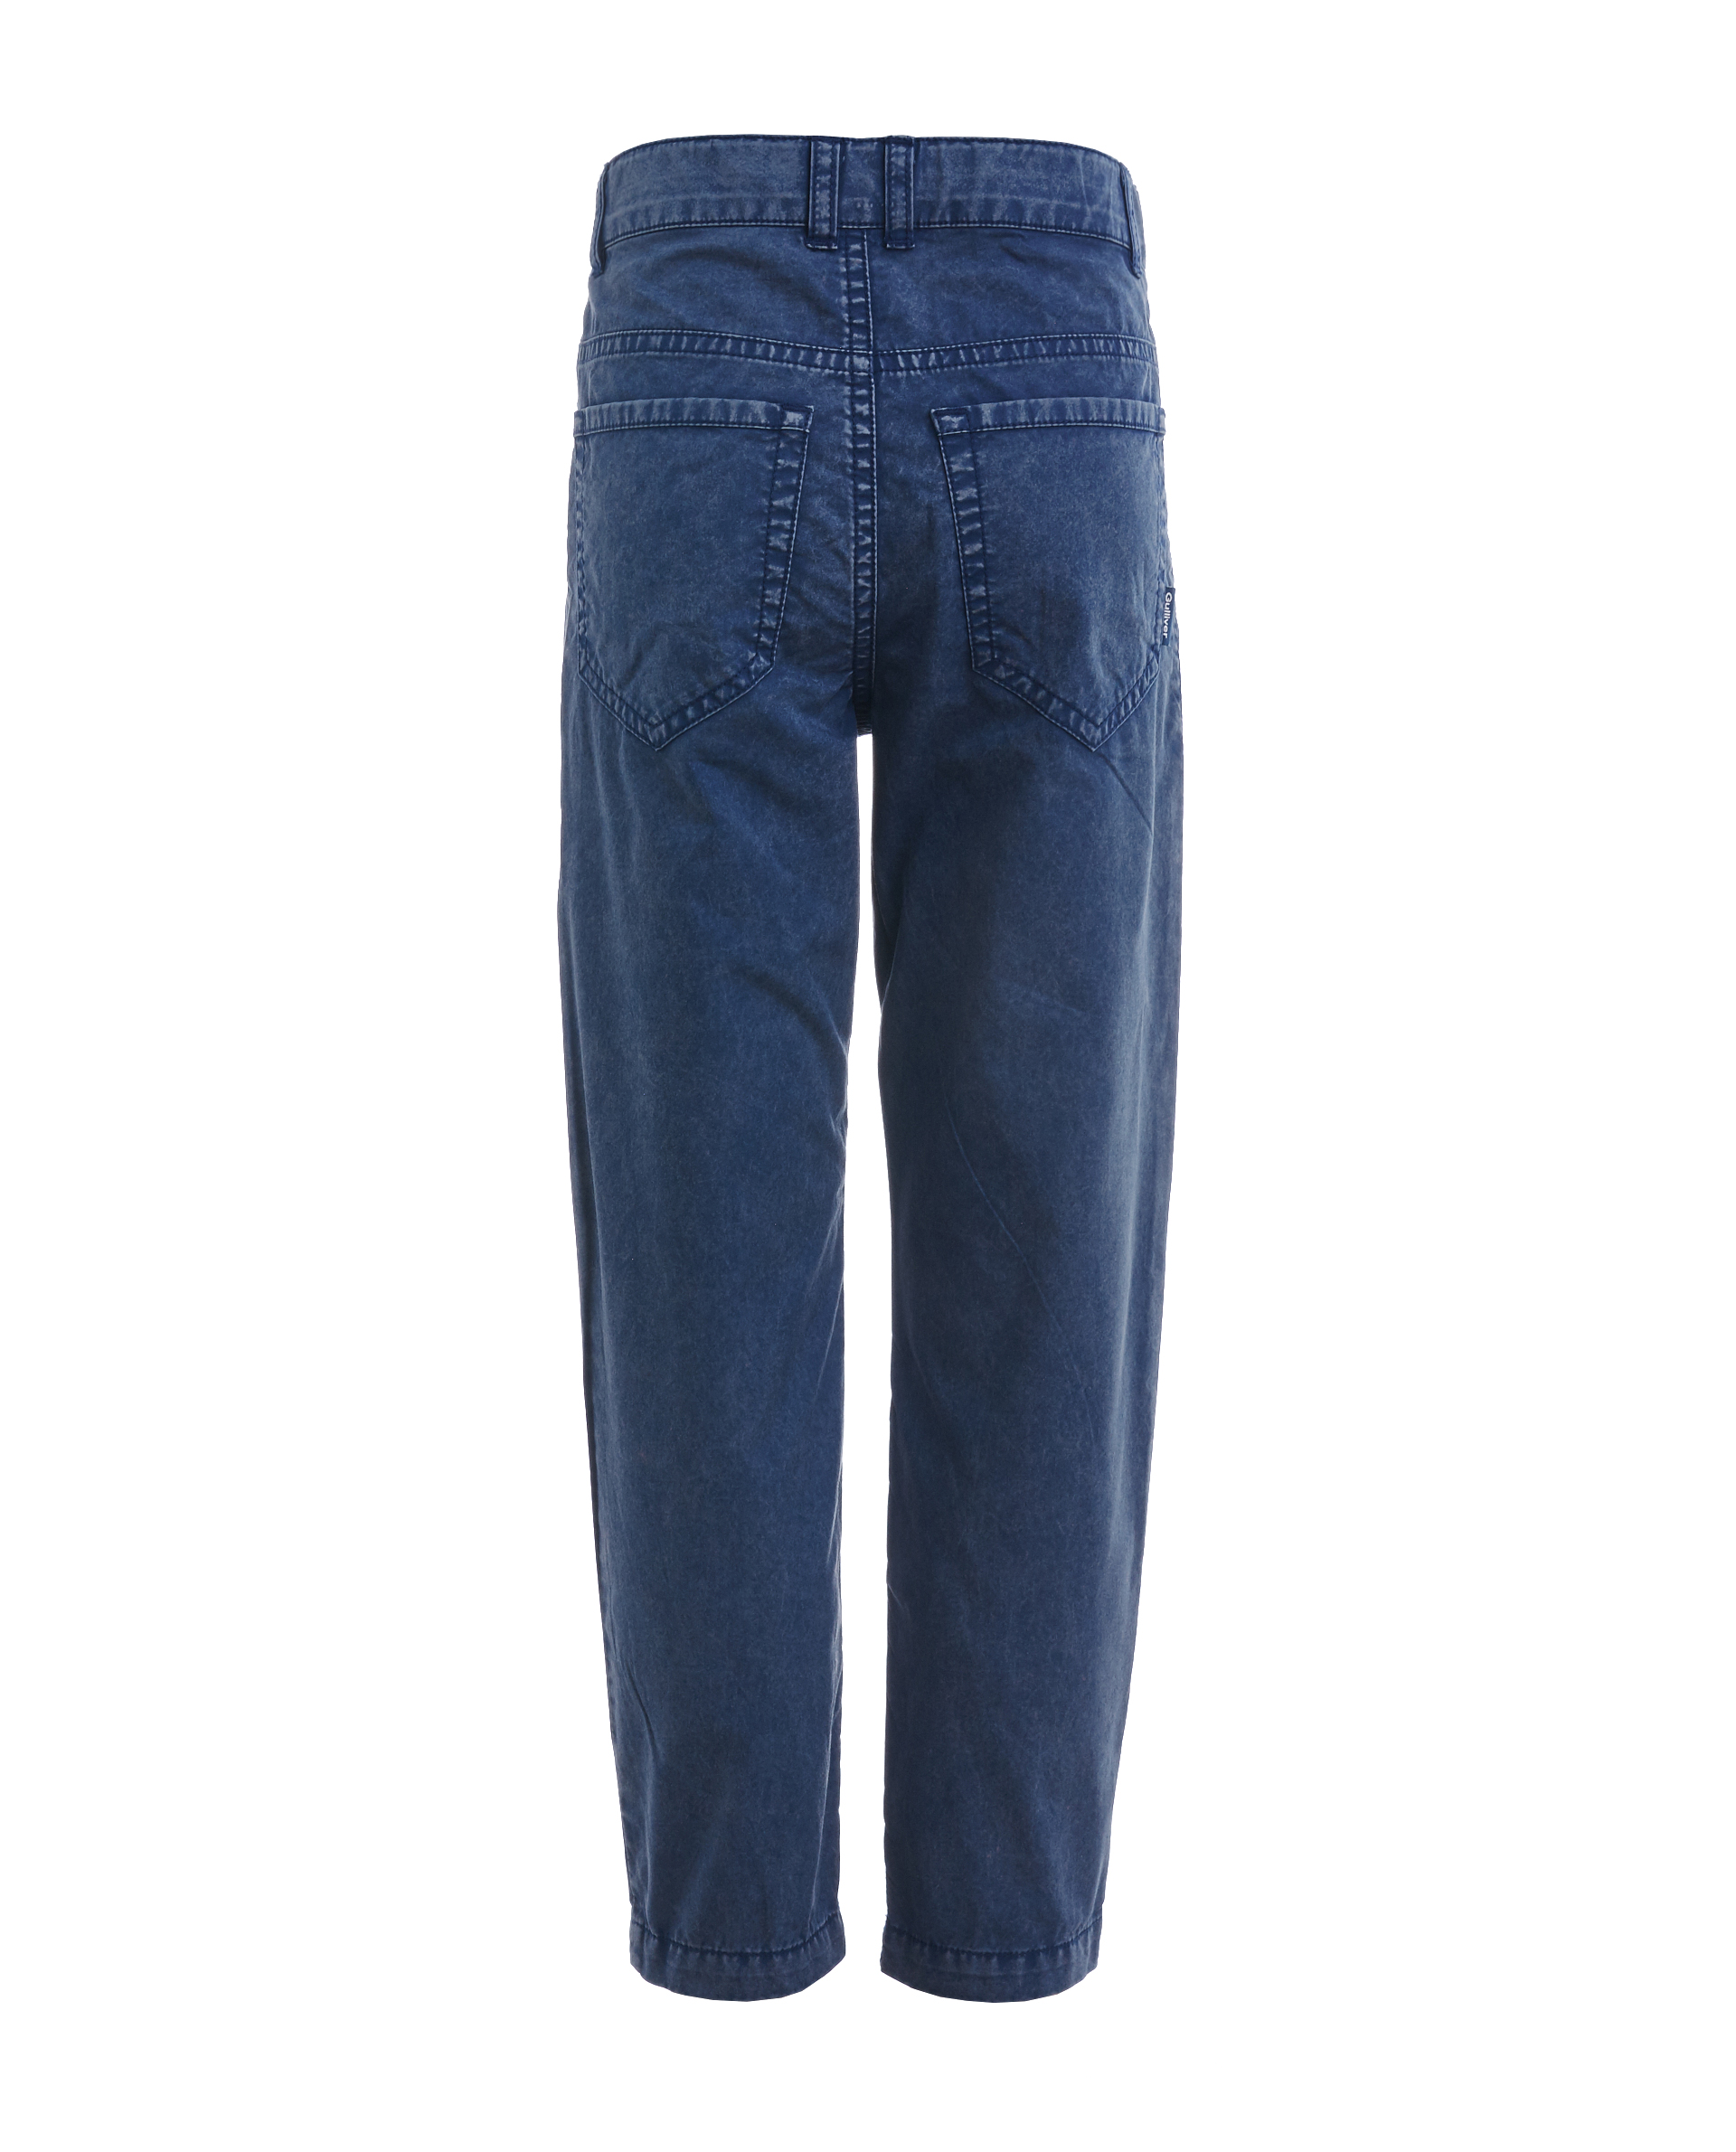 Синие брюки с винтажным эффектом Gulliver 11906BMC6305, размер 122, цвет синий - фото 2